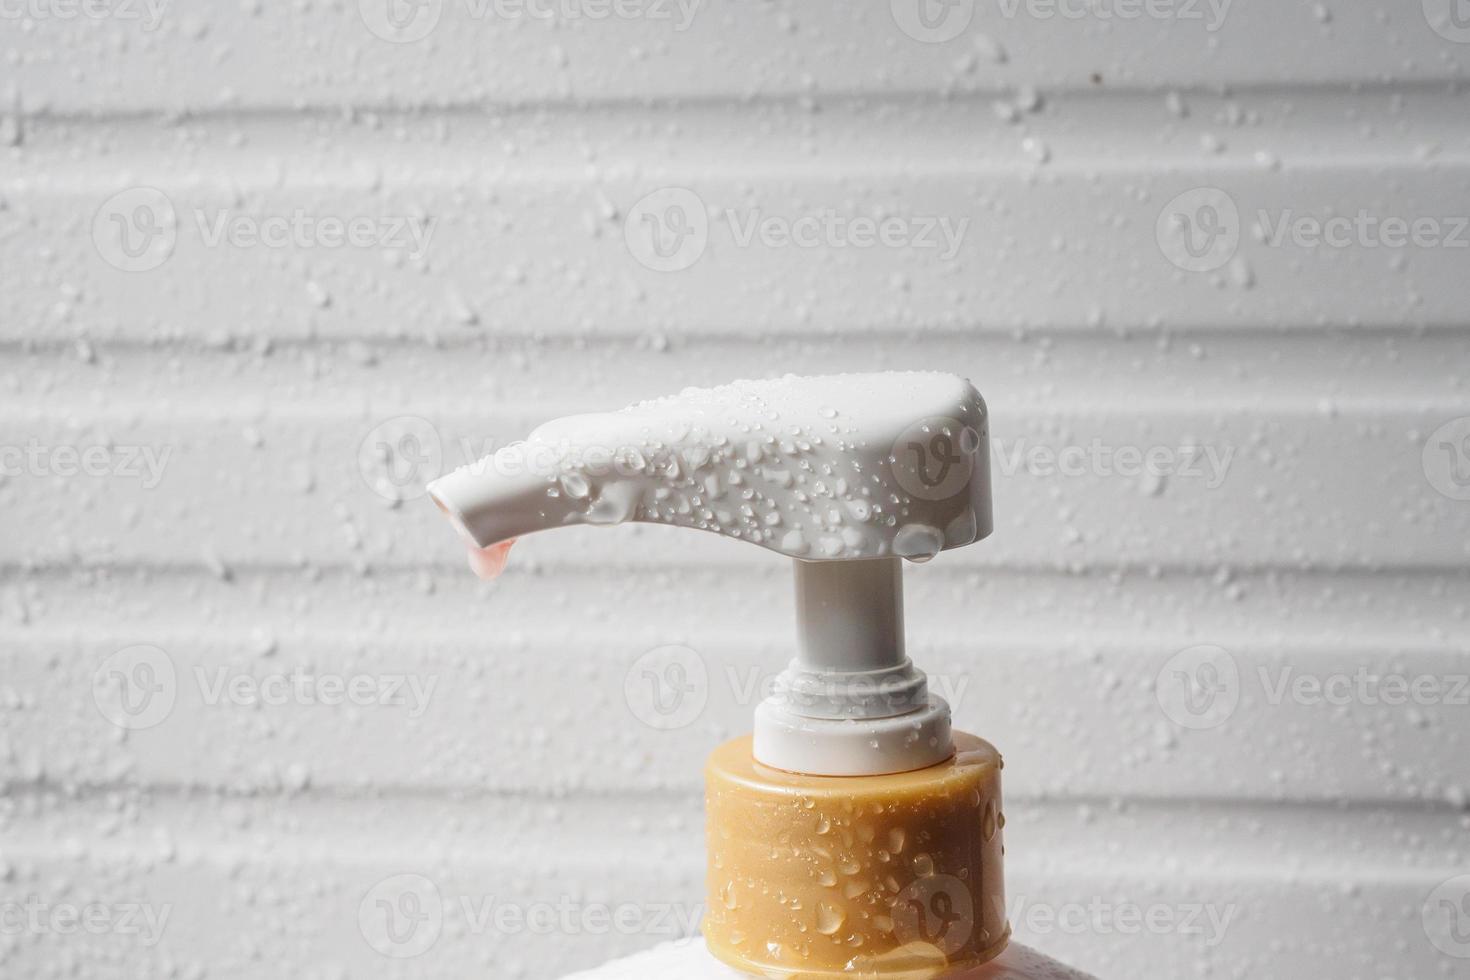 goutte d'eau sur la pompe du distributeur de savon liquide pendant l'heure du bain photo